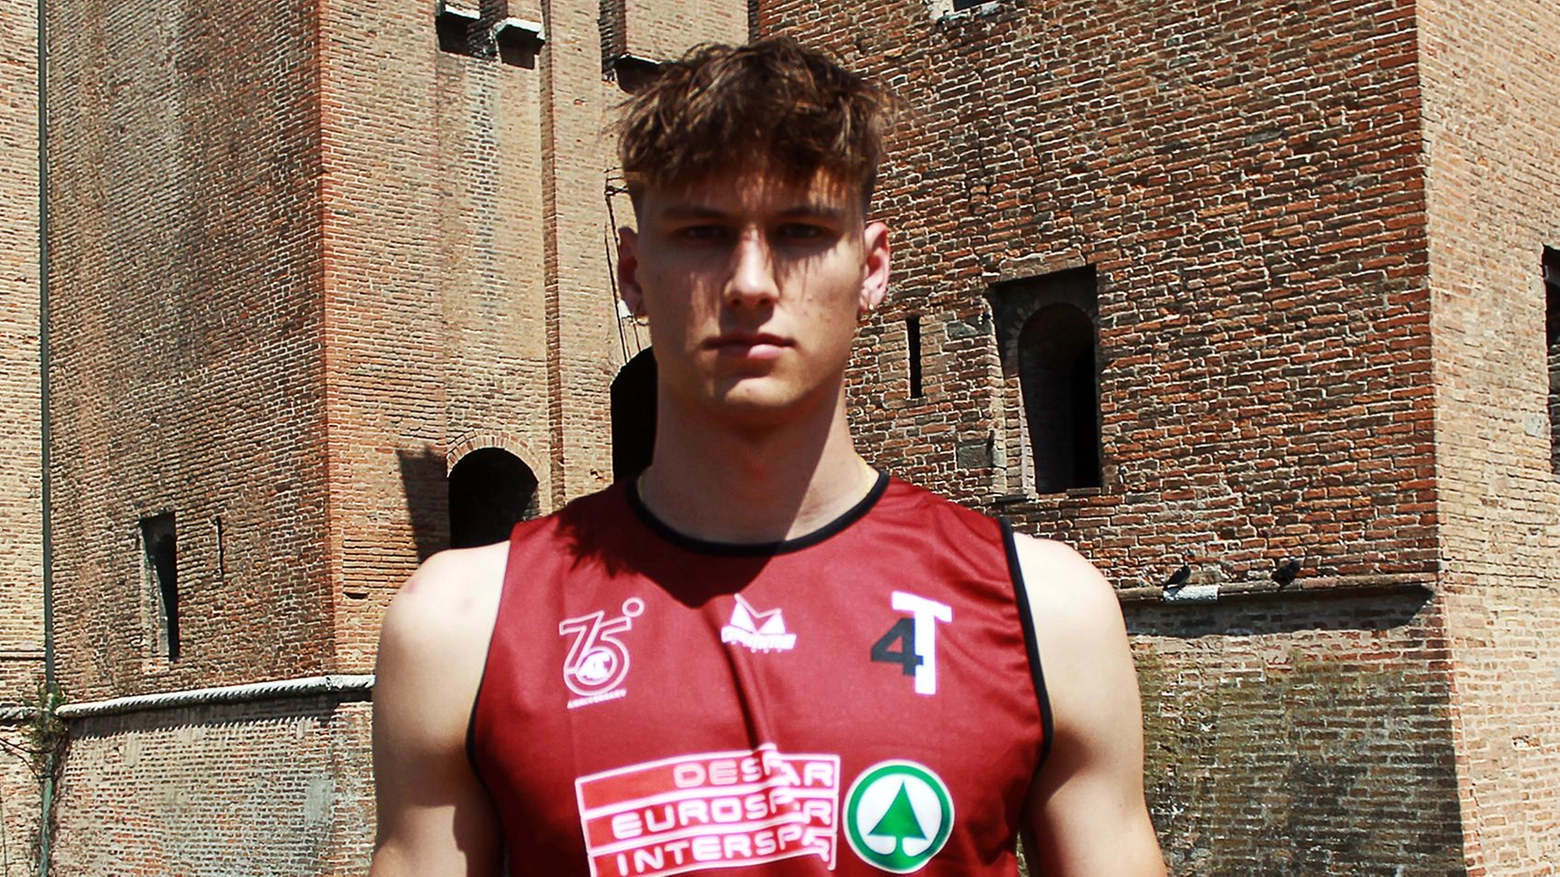 La Despar 4 Torri si assicura l'ala piccola Edin Mujakovic dal Ferrara Basket 2018. Reduce da un infortunio, il giovane punta alla vittoria in Divisione Regionale 1 con la nuova squadra.